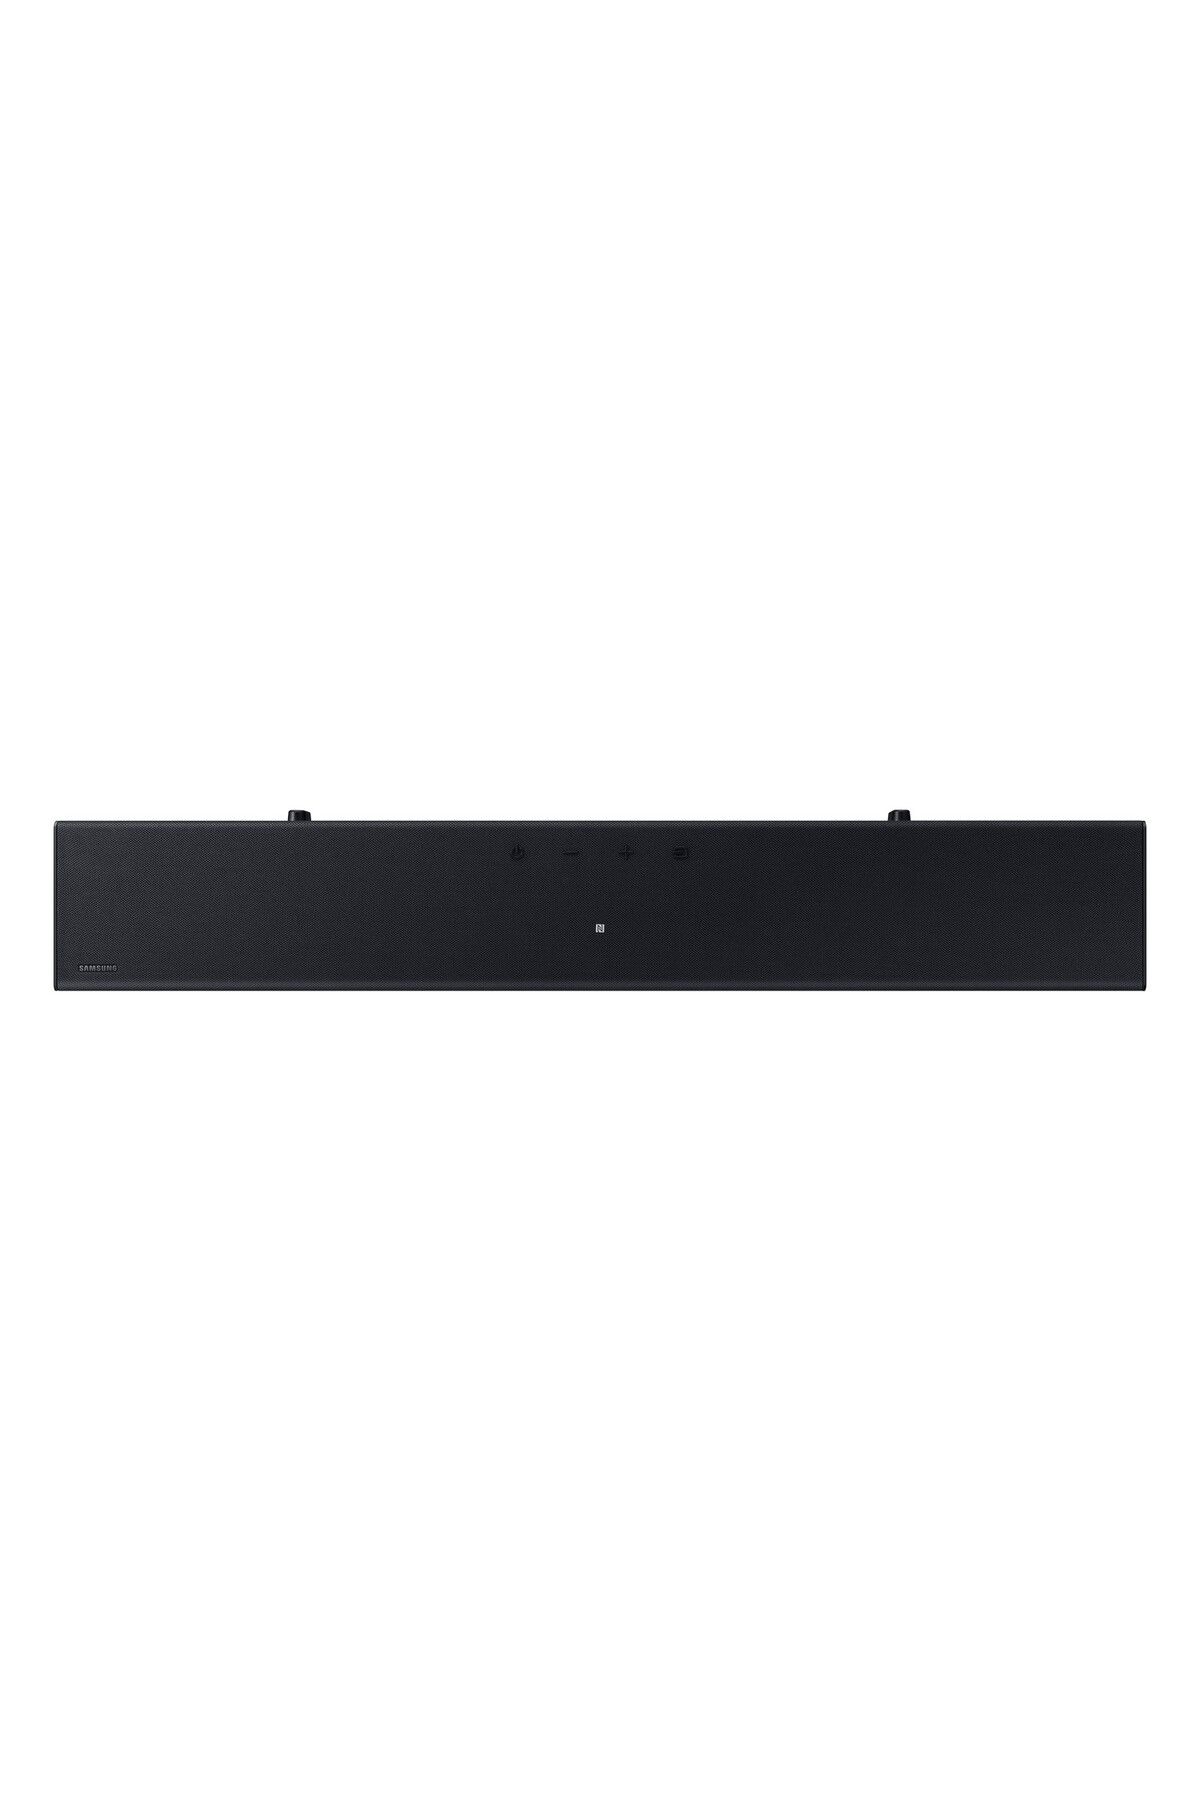 Samsung HW-C400 2.0 Kanal Soundbar - Siyah